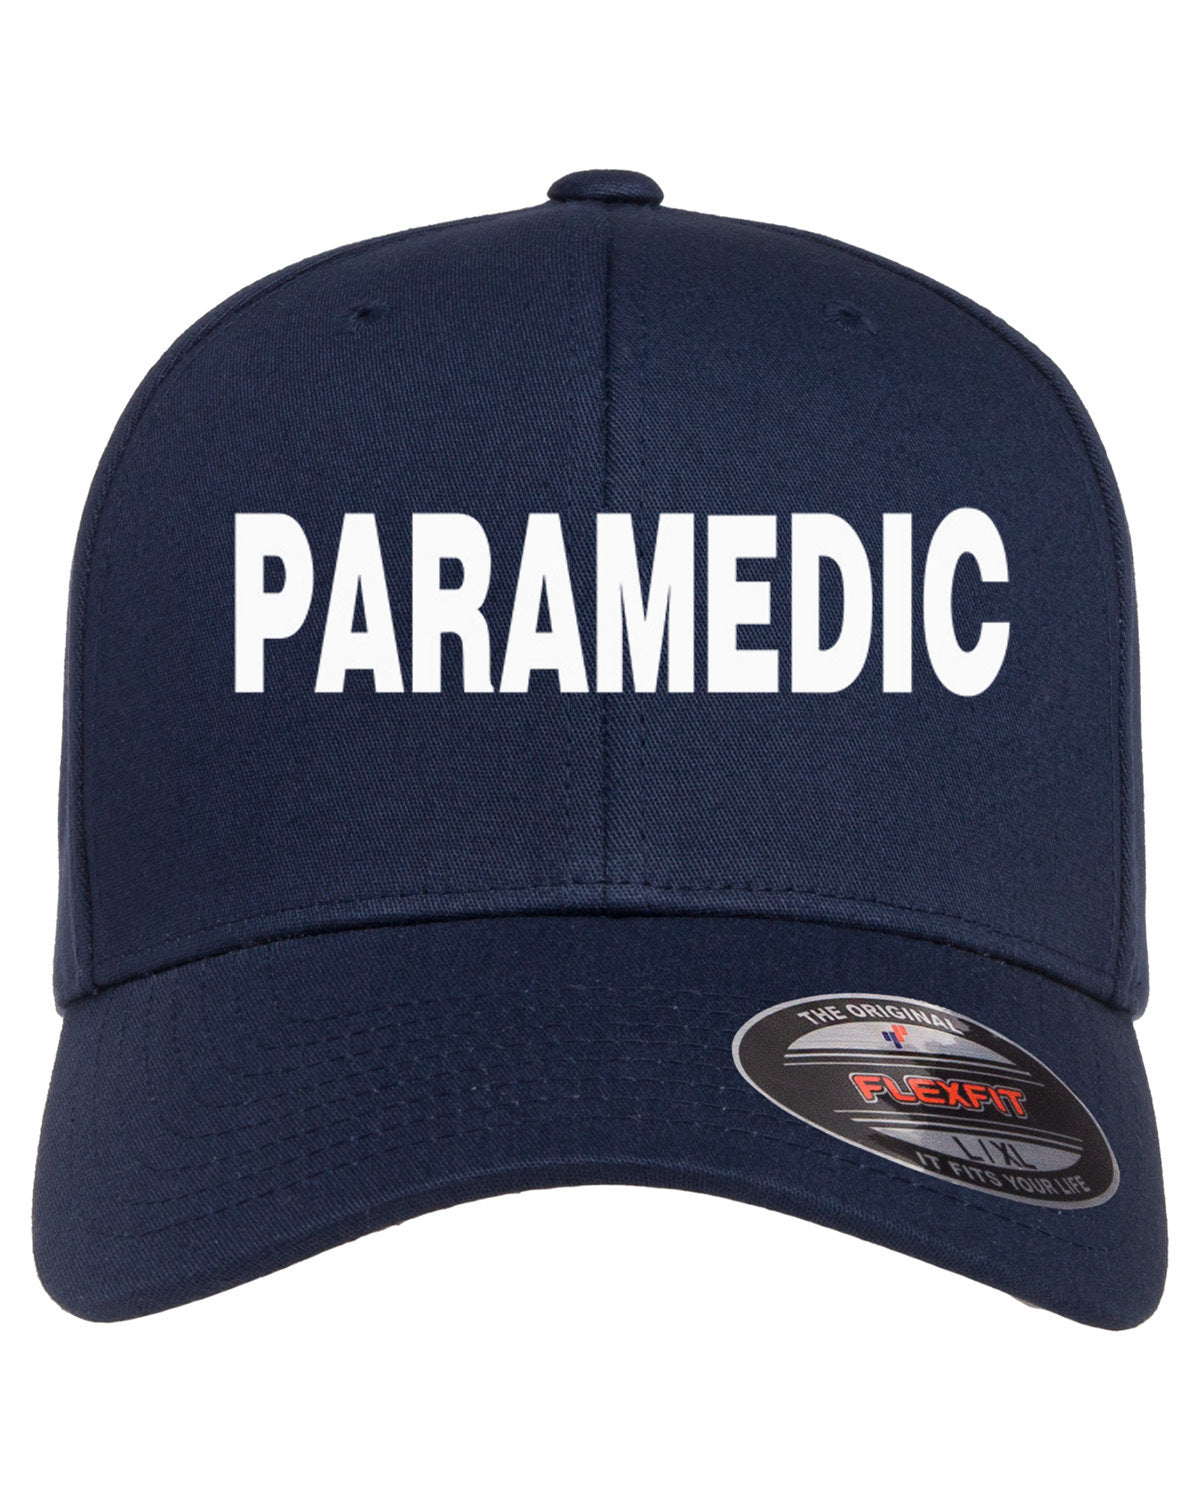 Paramedic - Ball Cap, Navy